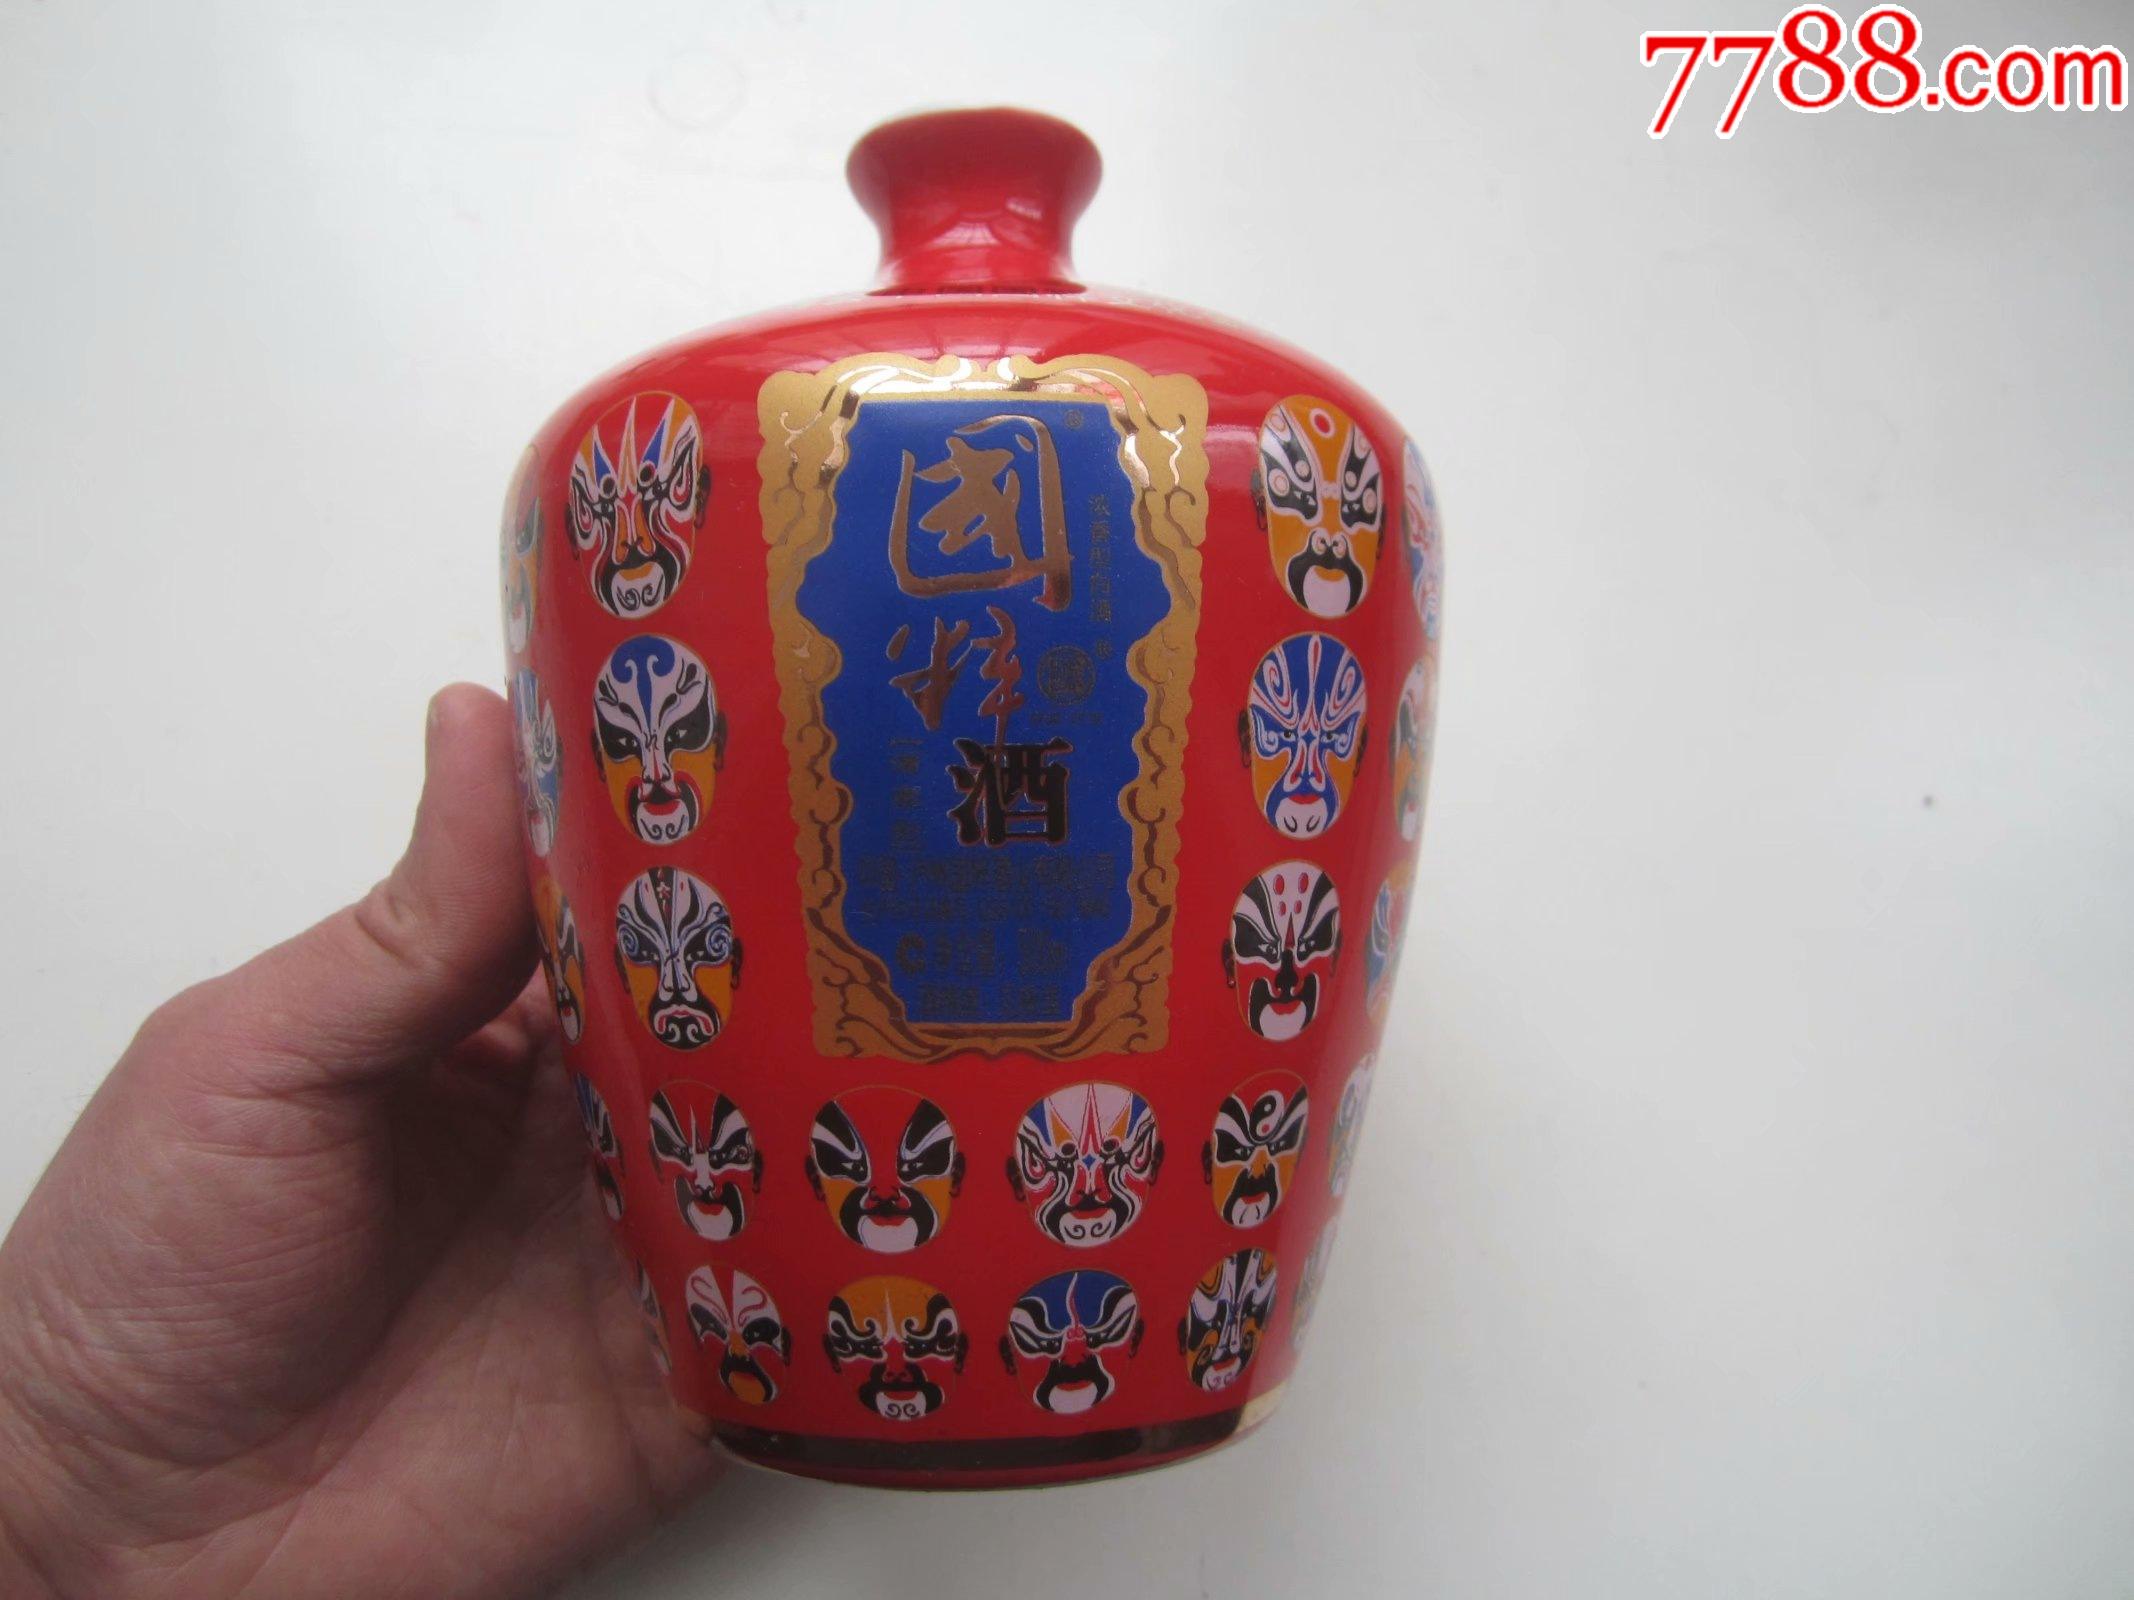 上海世博会中国国粹文化金奖戏曲脸谱红瓶国粹酒酒瓶